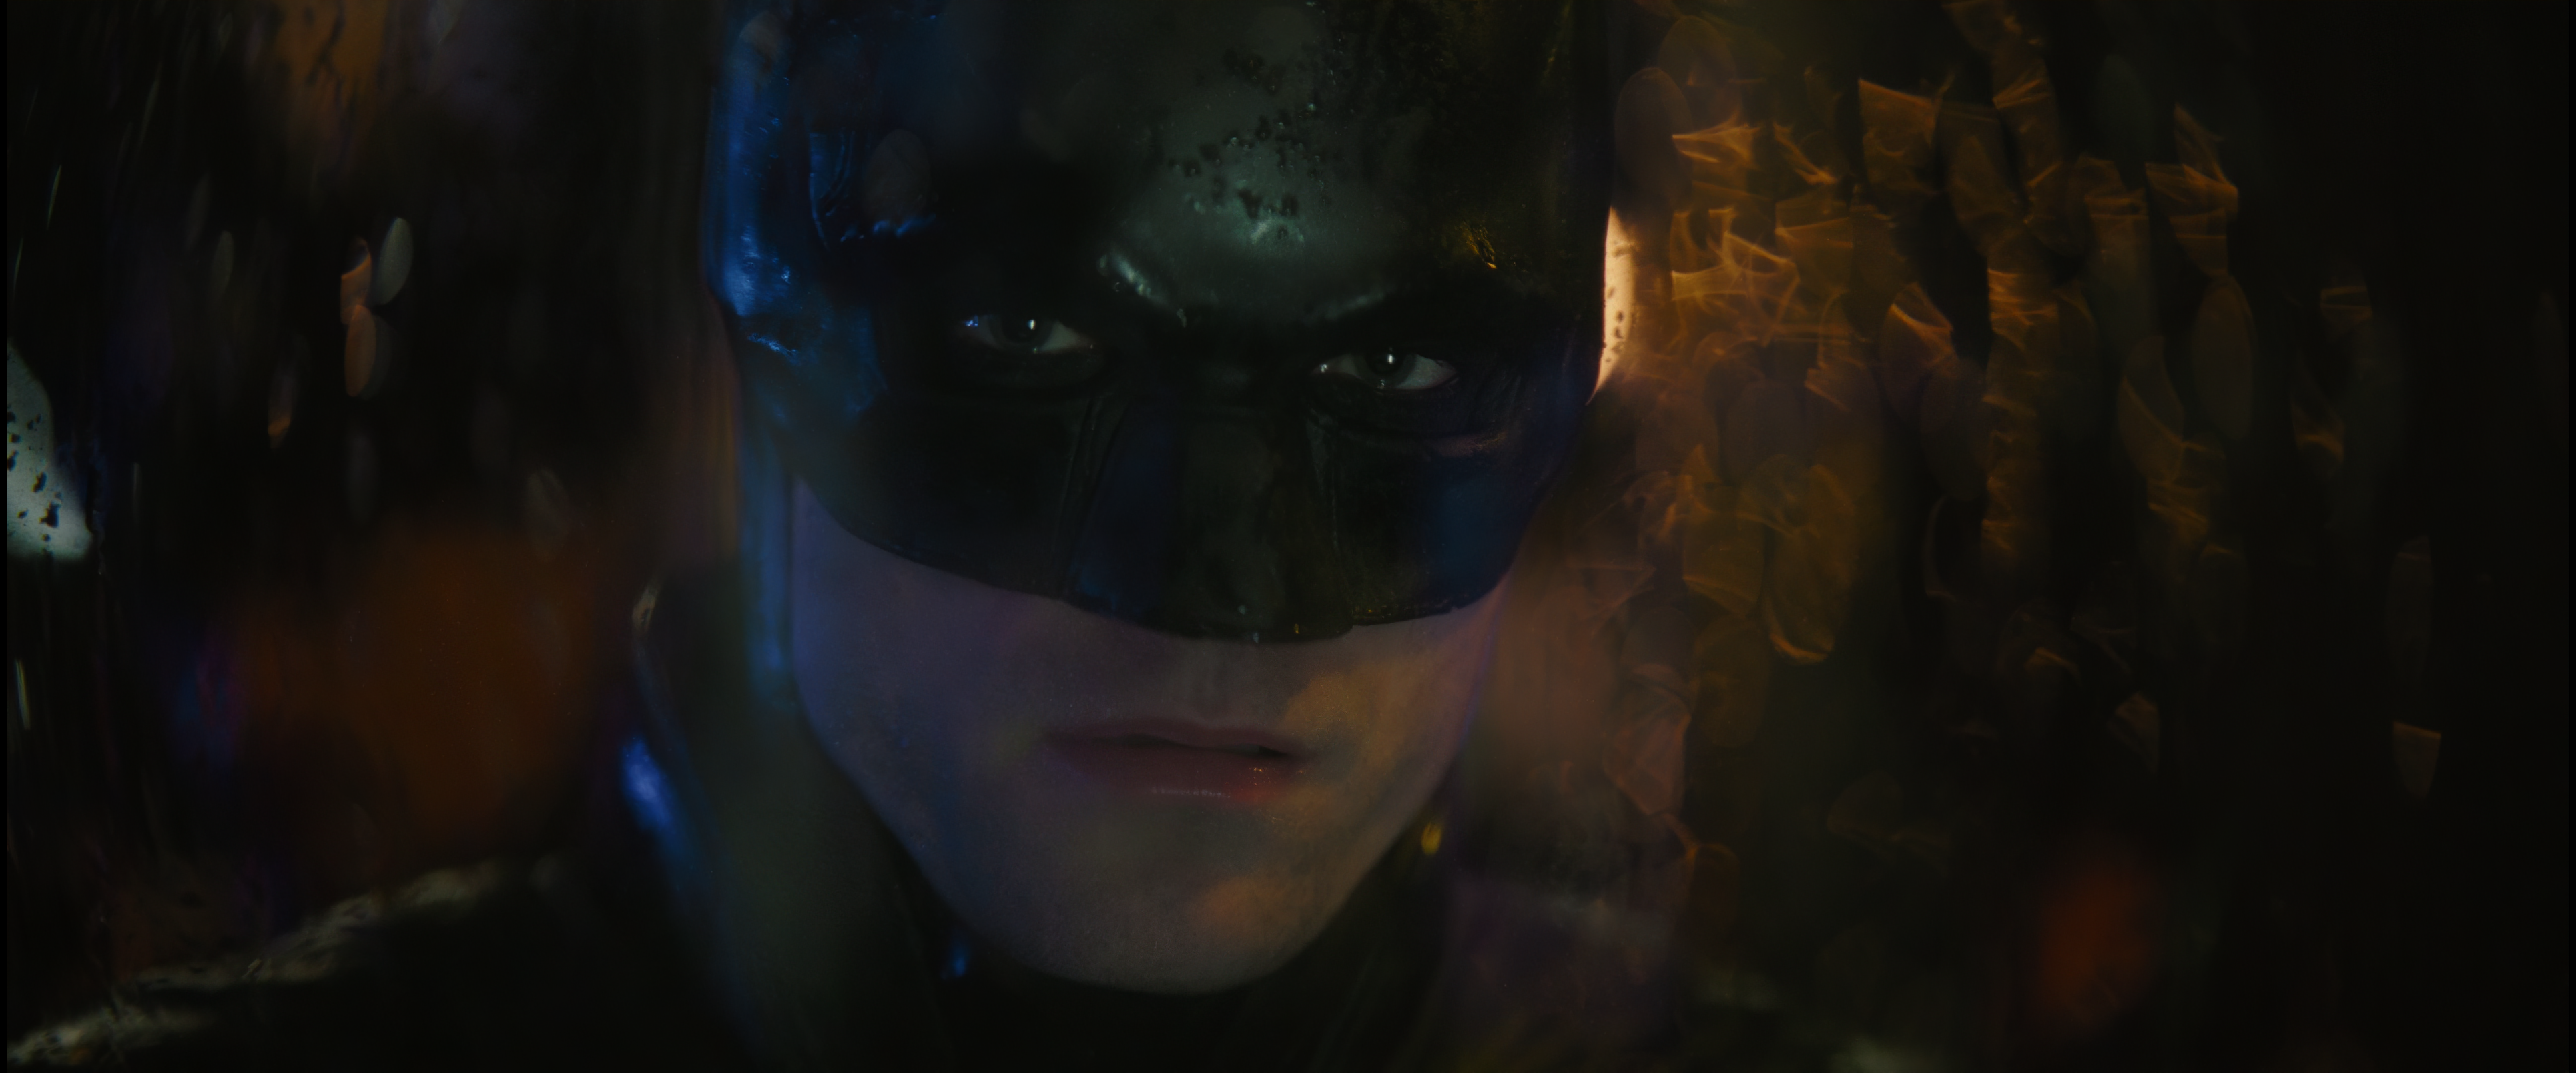 Cena do filme Batman. O Batman (Robert Pattinson) olha através de um vidro molhado, para frente. A metade superior de seu rosto é coberta por um capacete preto que mostra apenas os olhos. Ele usa uma capa preta com um colarinho alto. Ele é um homem caucasiano, de olhos azuis. Uma luz amarela vem detrás dele, iluminando as gotas no vidro, fora de foco. Está de noite e tons escuros e amarelos aparecem atrás dele, também fora de foco.